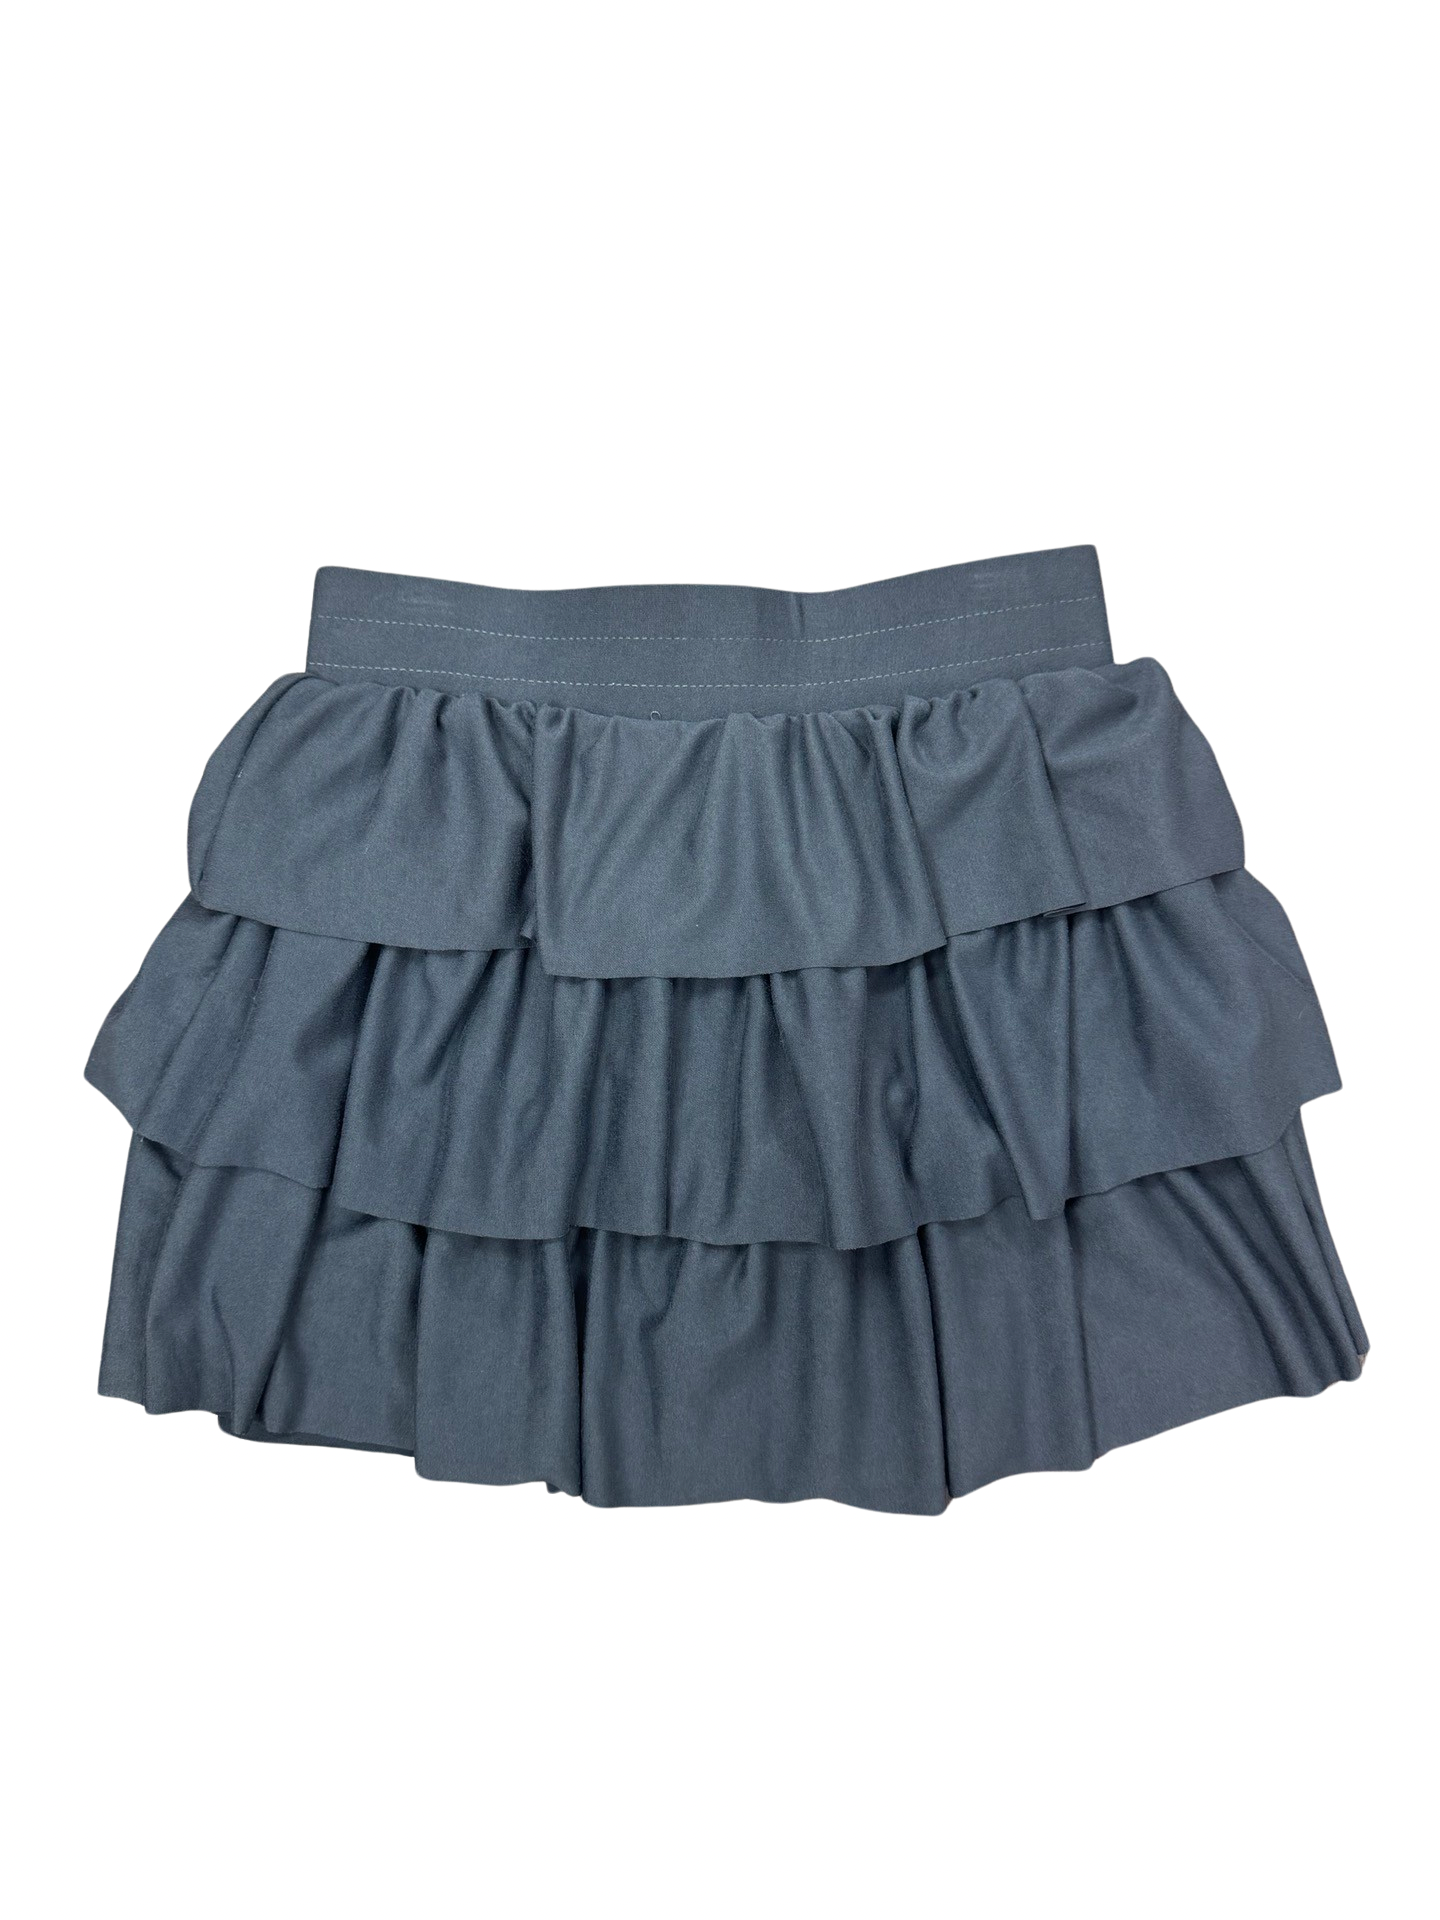 Girls- Erge Tiered Ruffle Skirt